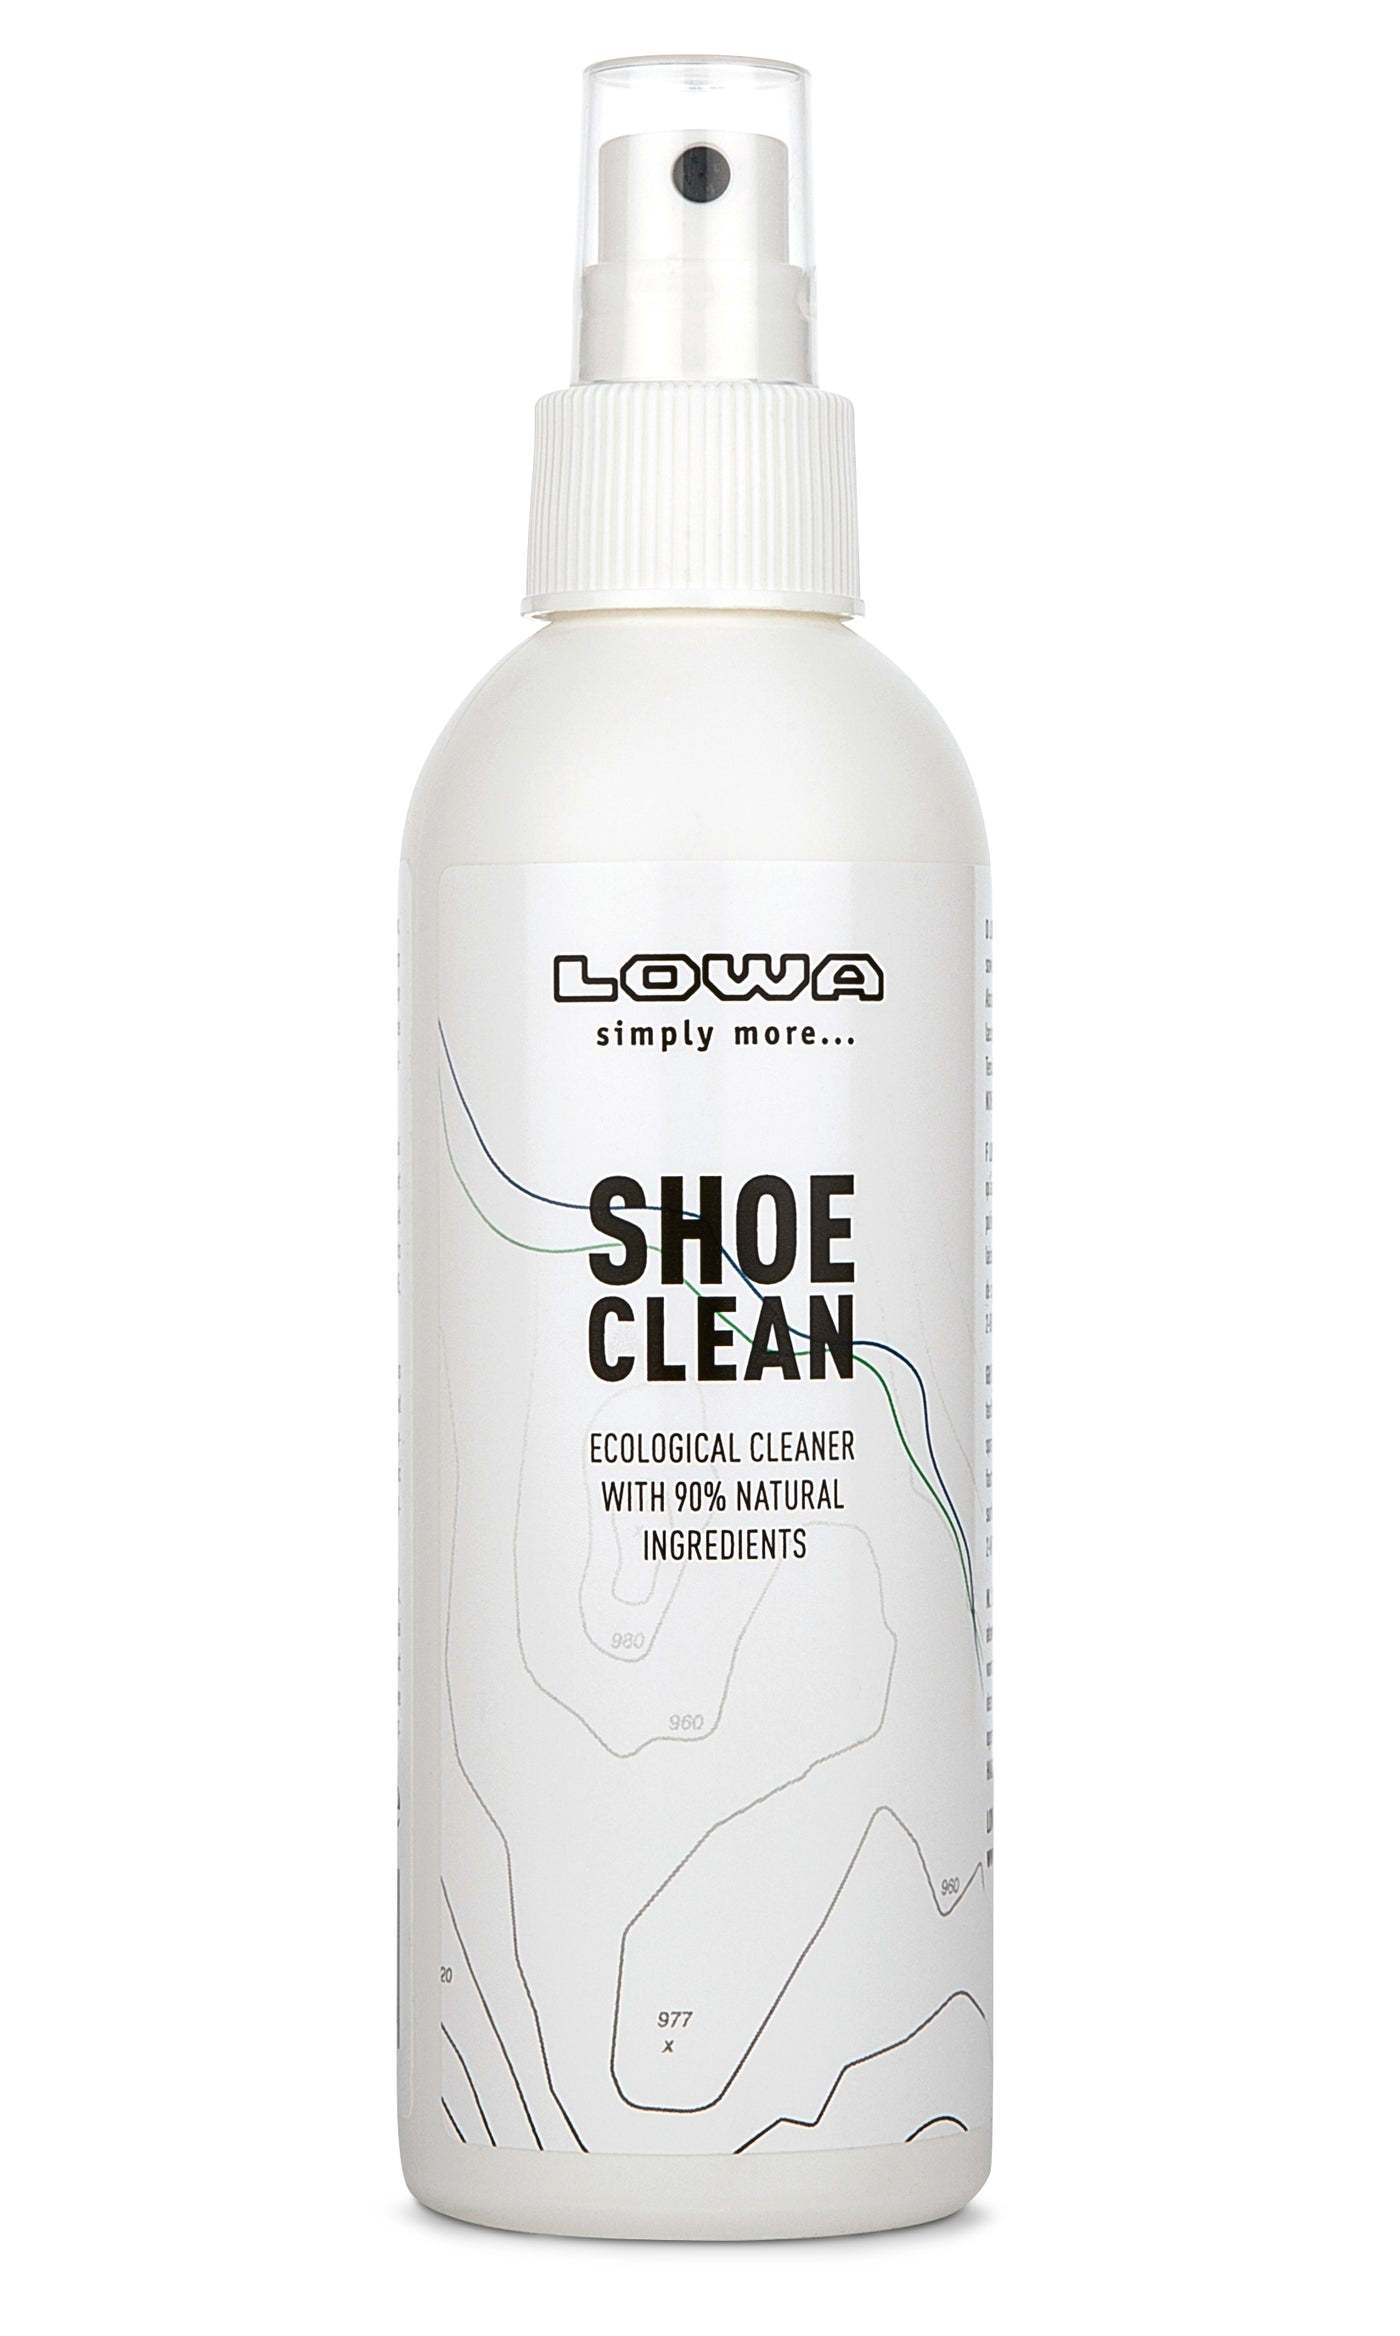 Shoe Clean Lowa